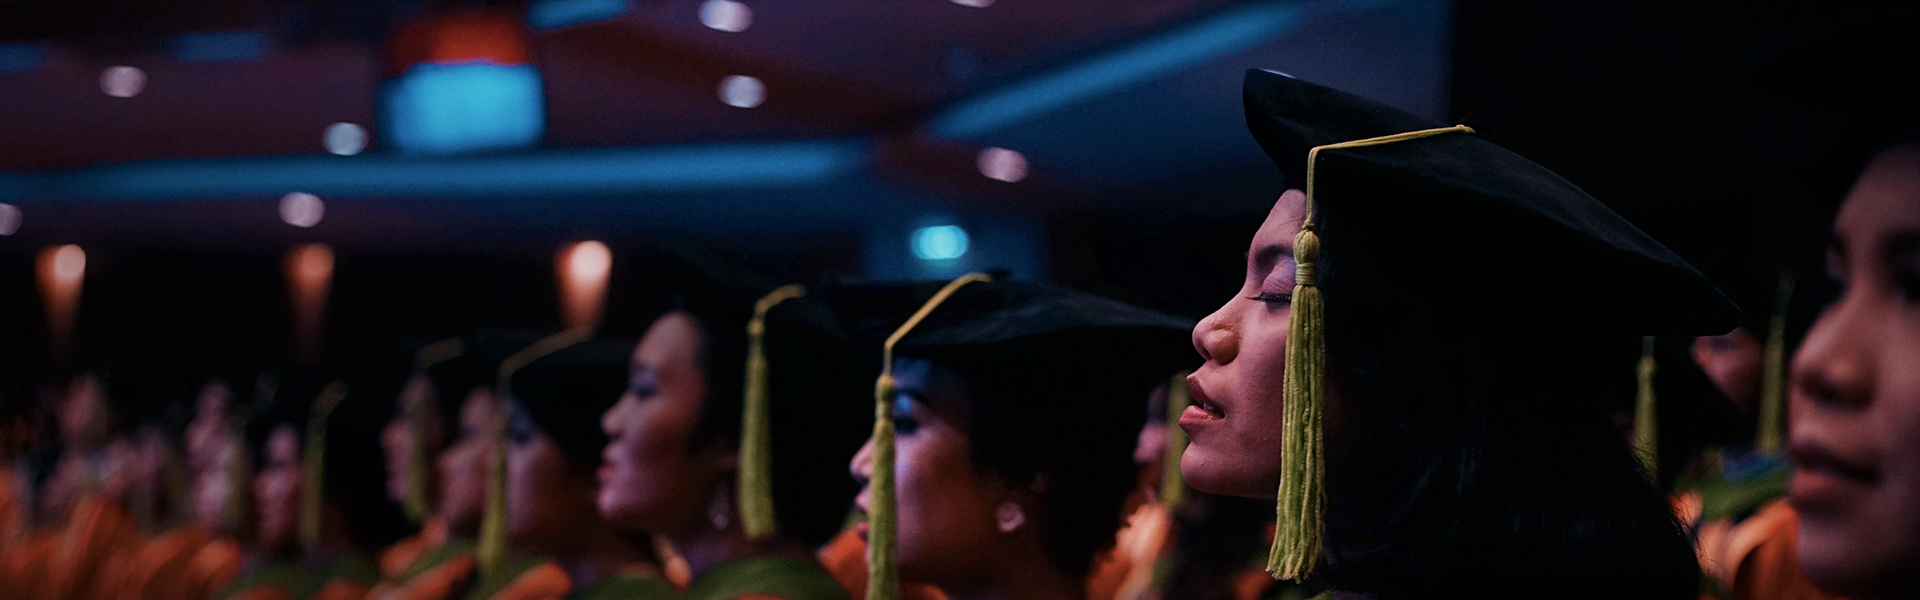 Our Graduates Uph Universitas Pelita Harapan Uph Universitas Pelita Harapan